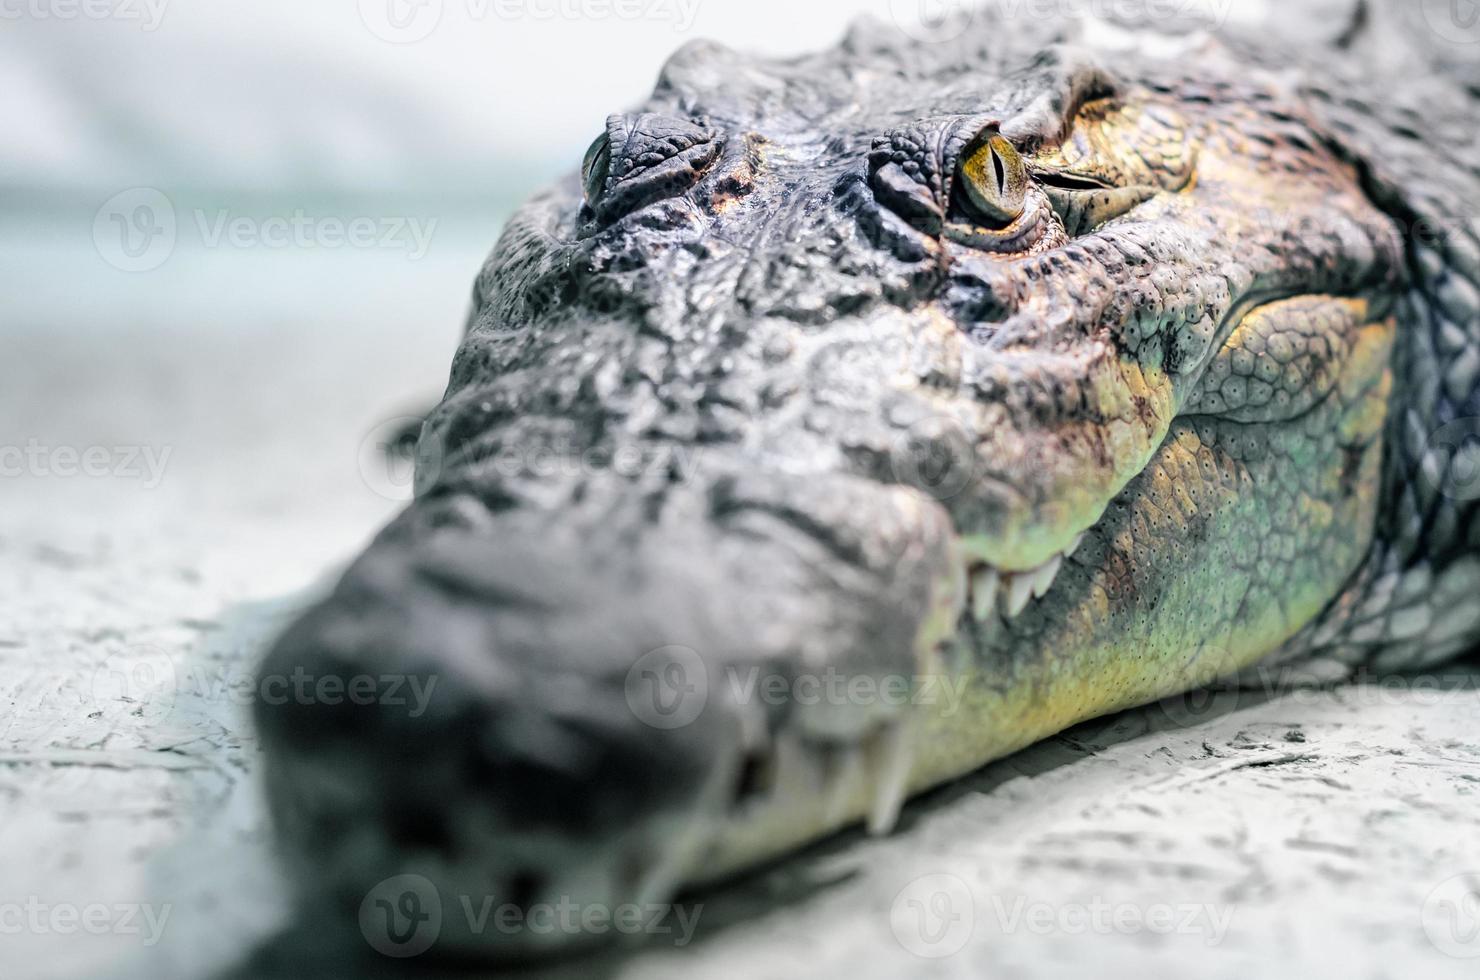 Cabeza de cocodrilo con boca dentuda y ojos amarillos de cerca foto